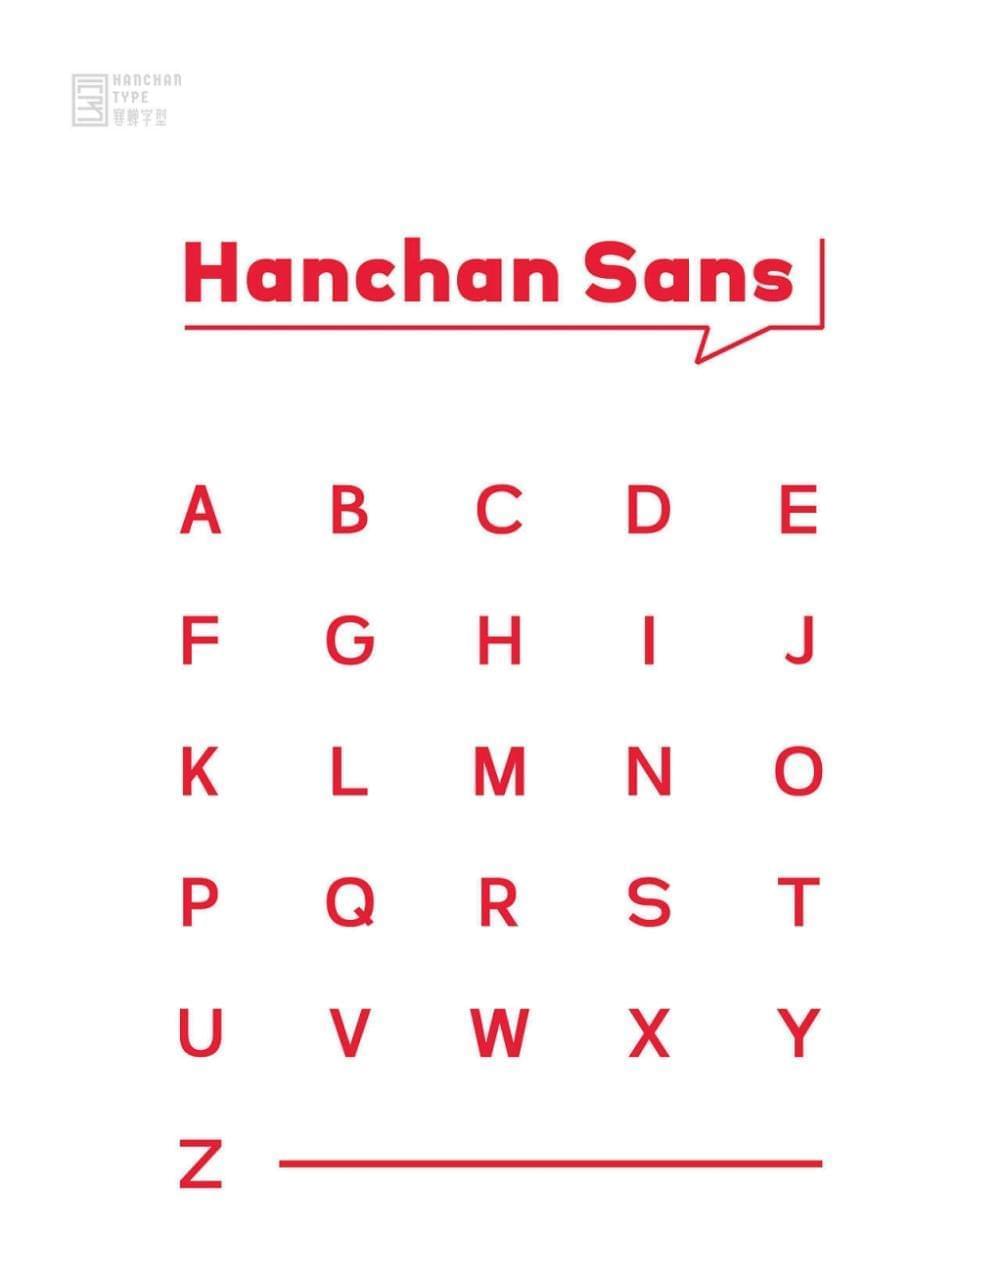 Hanchan sans5079,sans,字体,引见,热蝉,字型